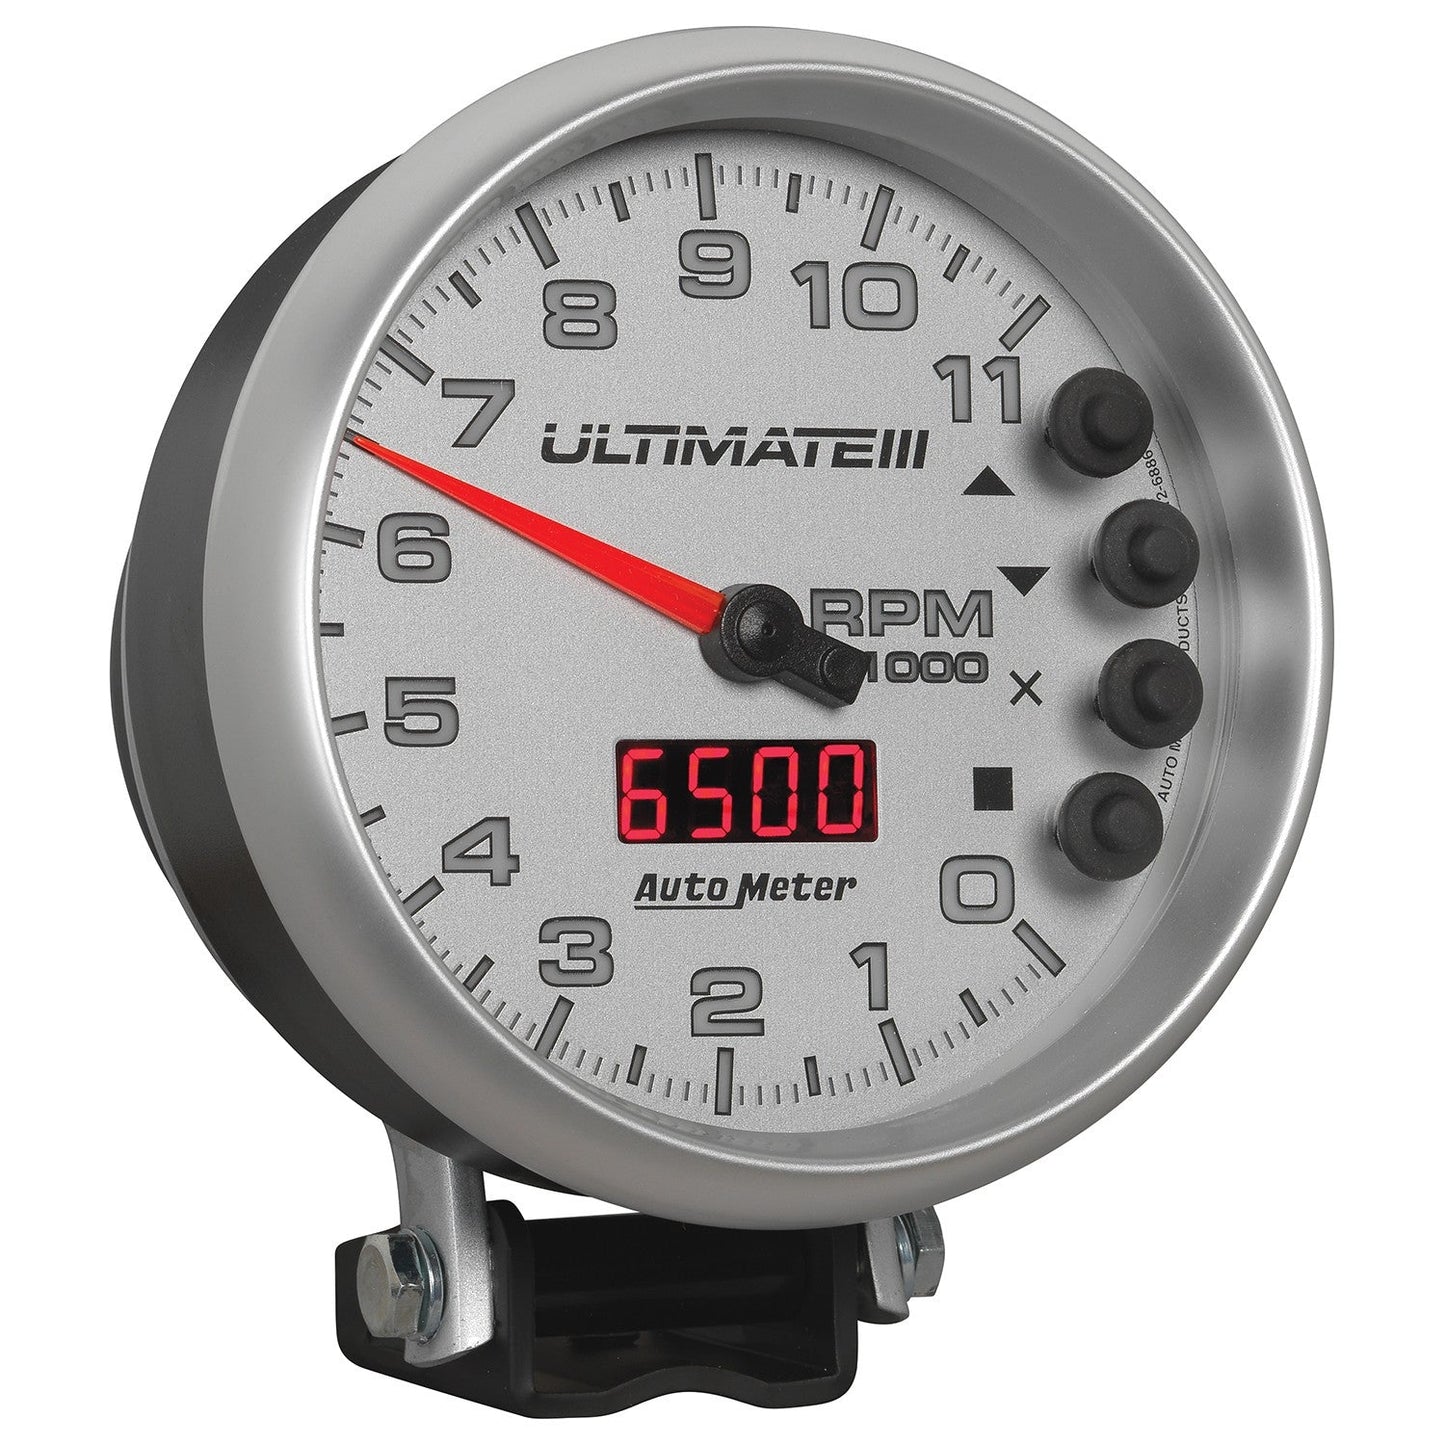 AutoMeter - TACÓMETRO DE 5", 0-11 000 RPM, PEDESTAL, REPRODUCCIÓN ULTIMATE III, PLATA (6886)